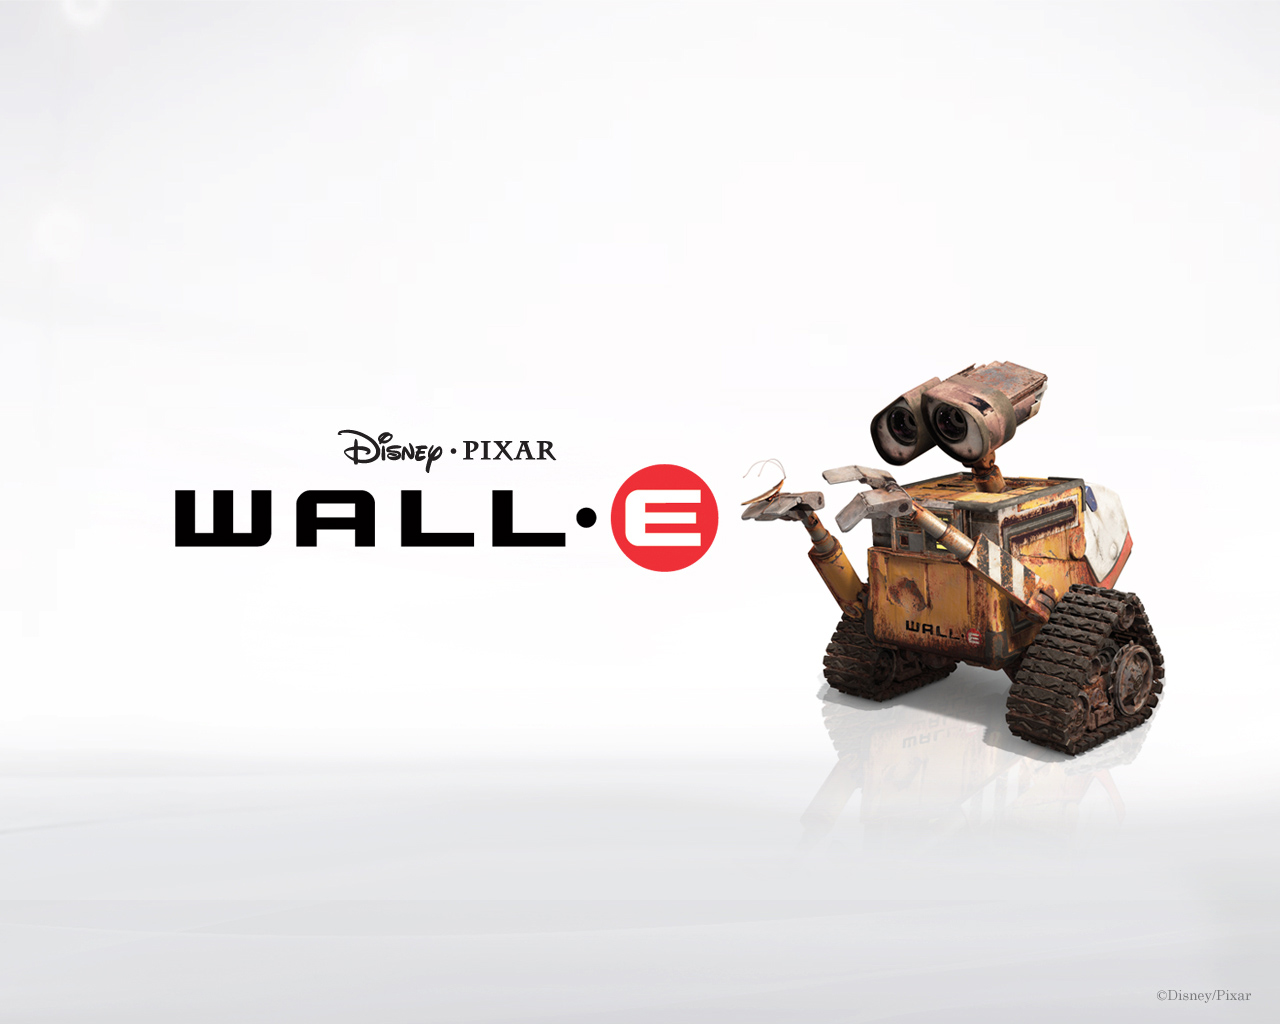 "WALL-E" Pixar cartoon movie desktop wallpaper number 1 (1280 x 1024 pixels)